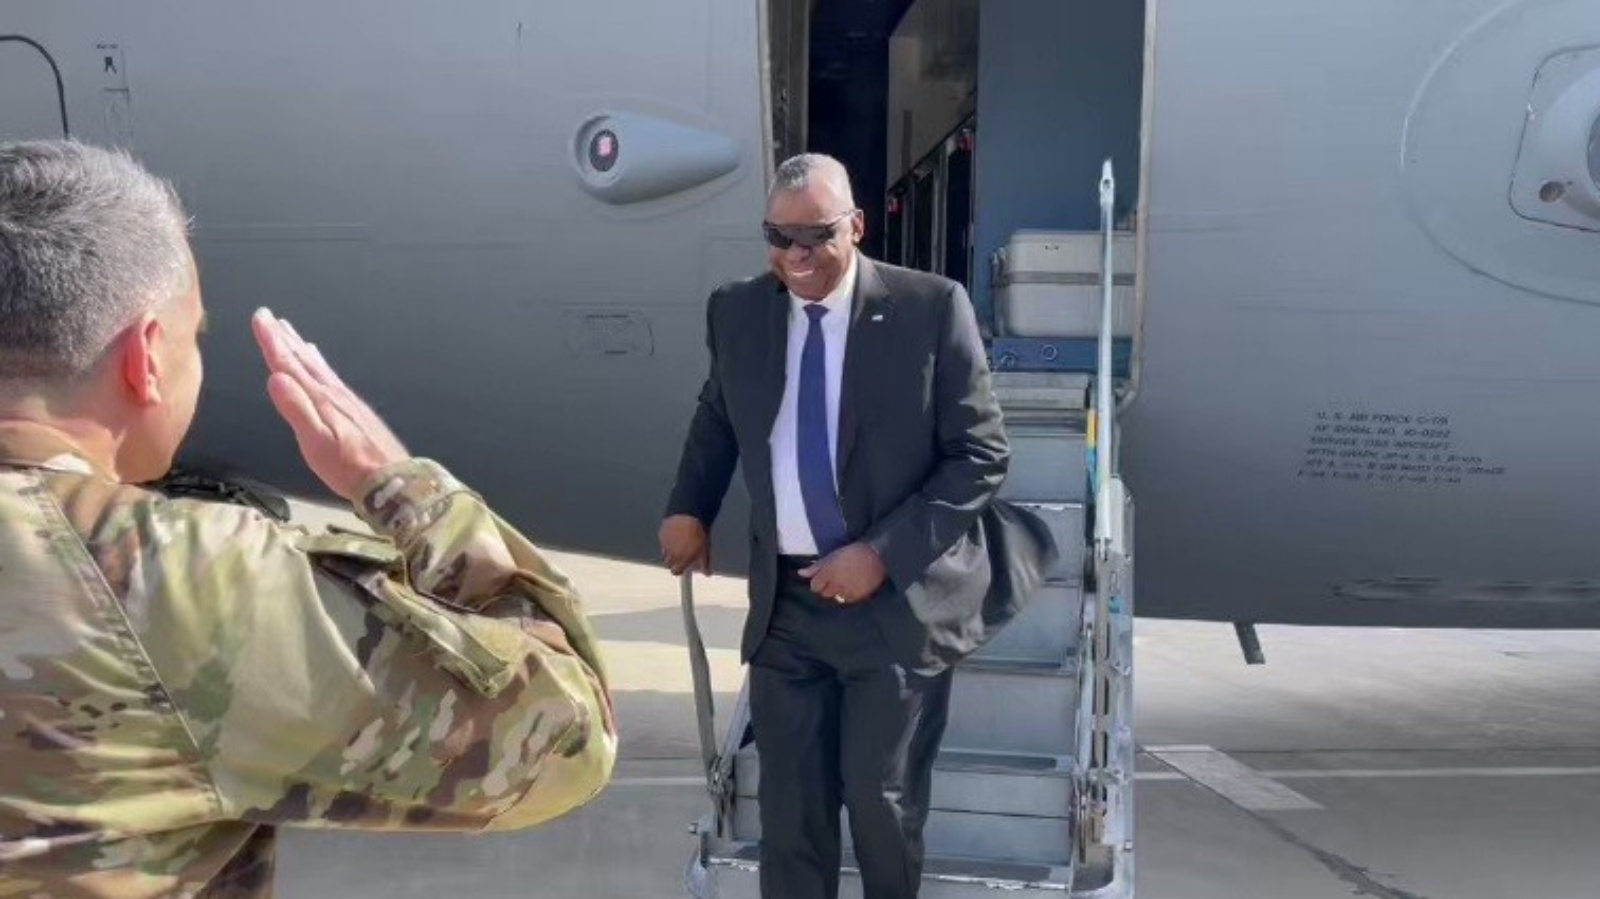 وزير الدفاع الأميركي لويد أوستن يصل إلى بغداد في زيارة غير معلنة